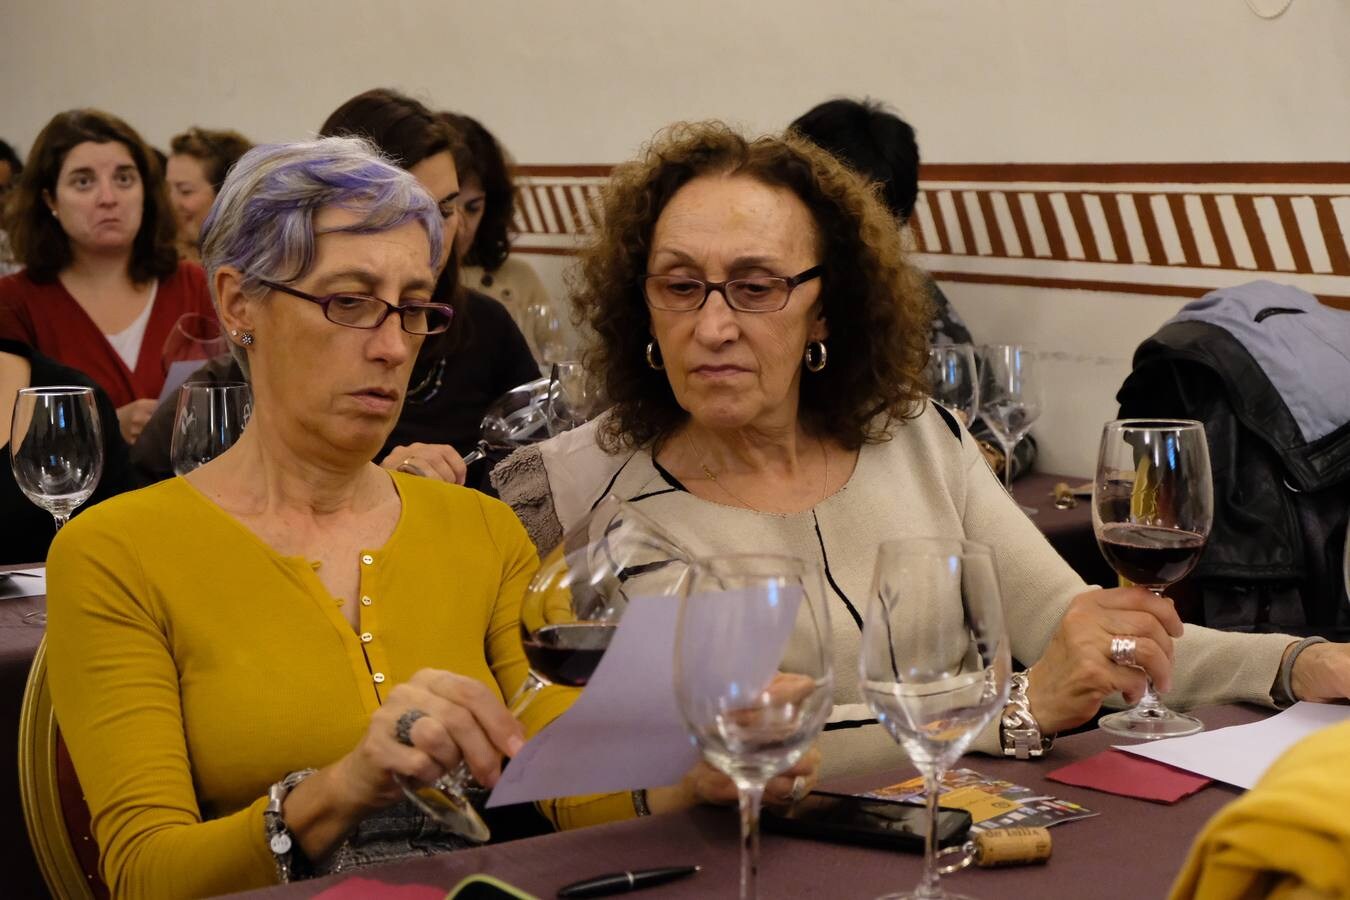 El Otoño Enológico de Caja Rural abre sus puertas en Segovia